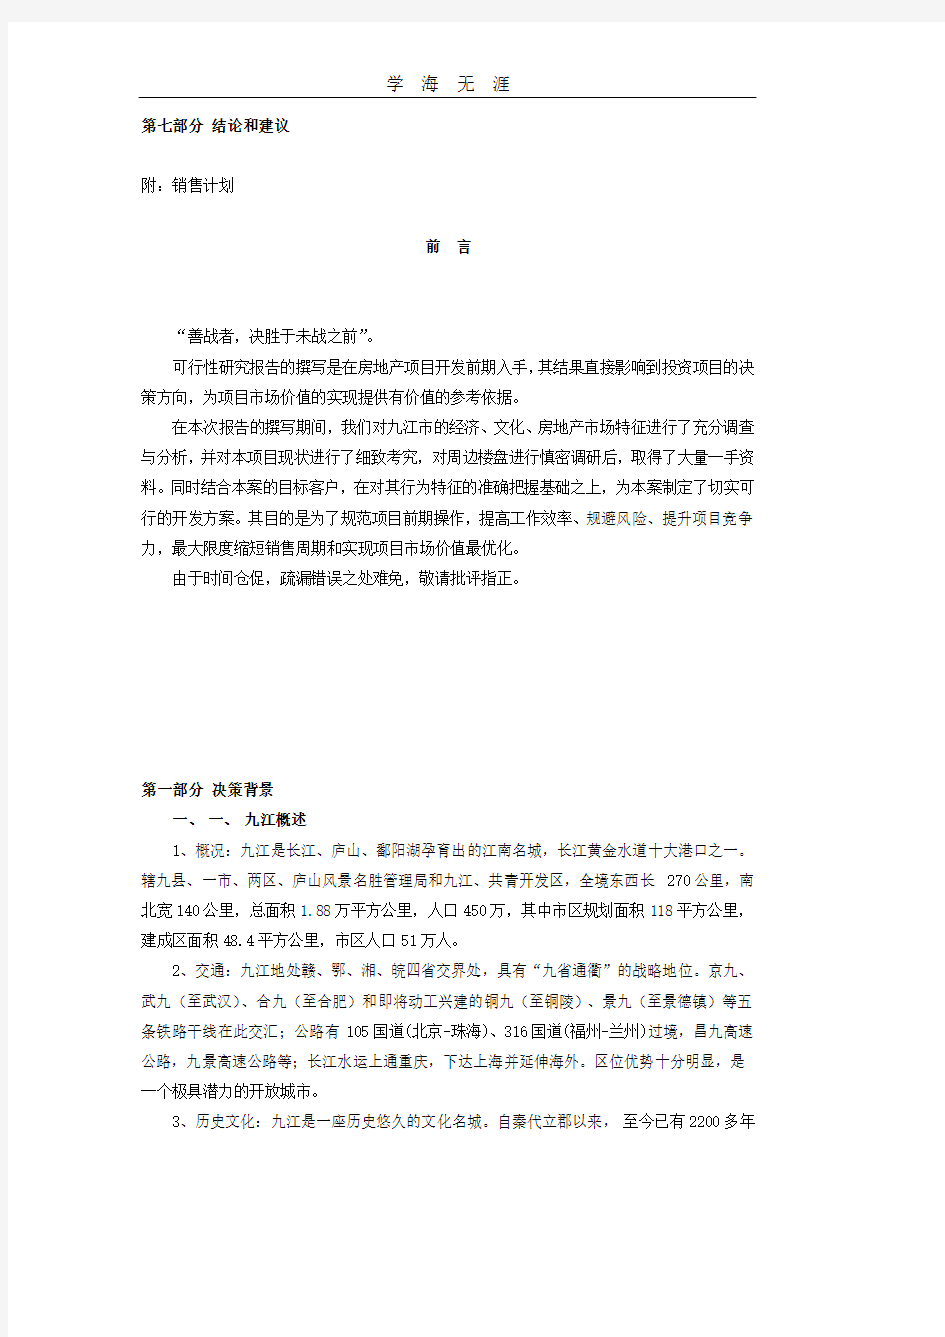 九江香榭丽舍可行性研究报告.pdf